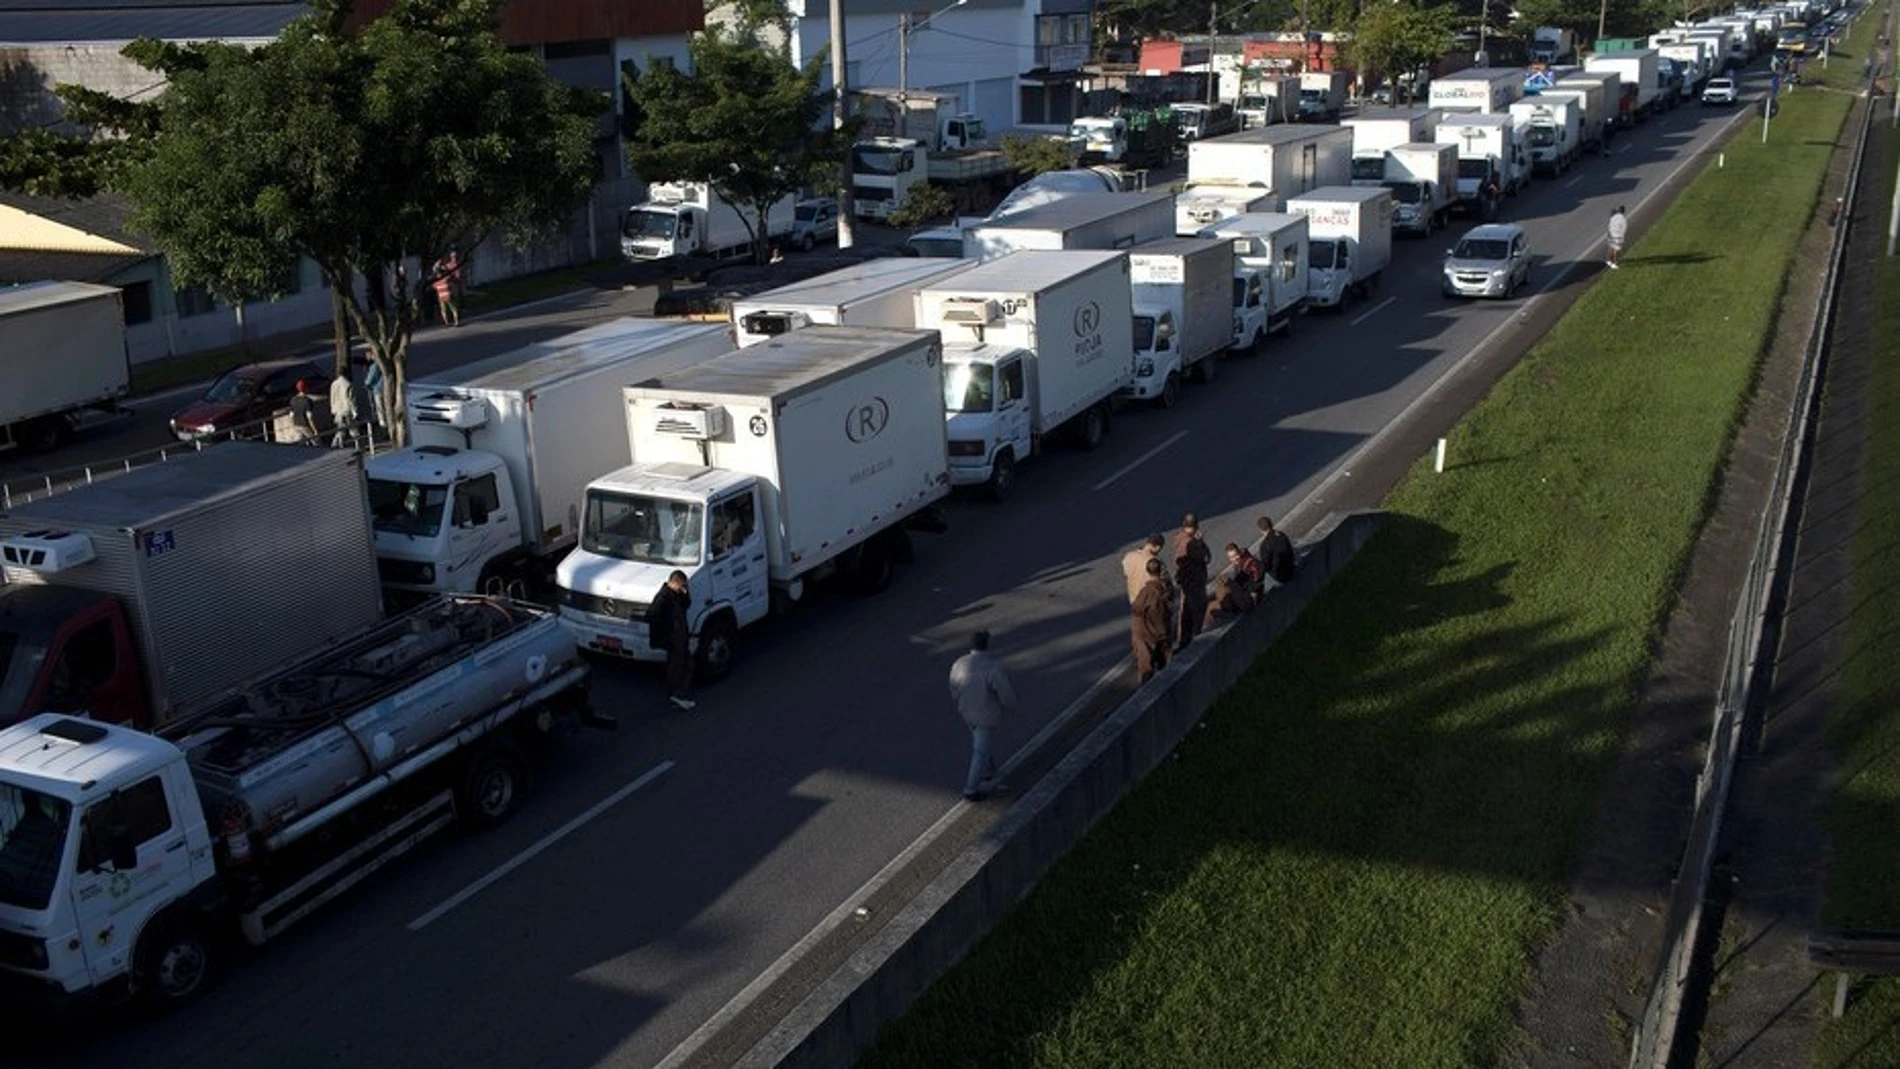 La huelga de camiones ha sumido en el caos a las principales ciudades brasileñas. Twiter